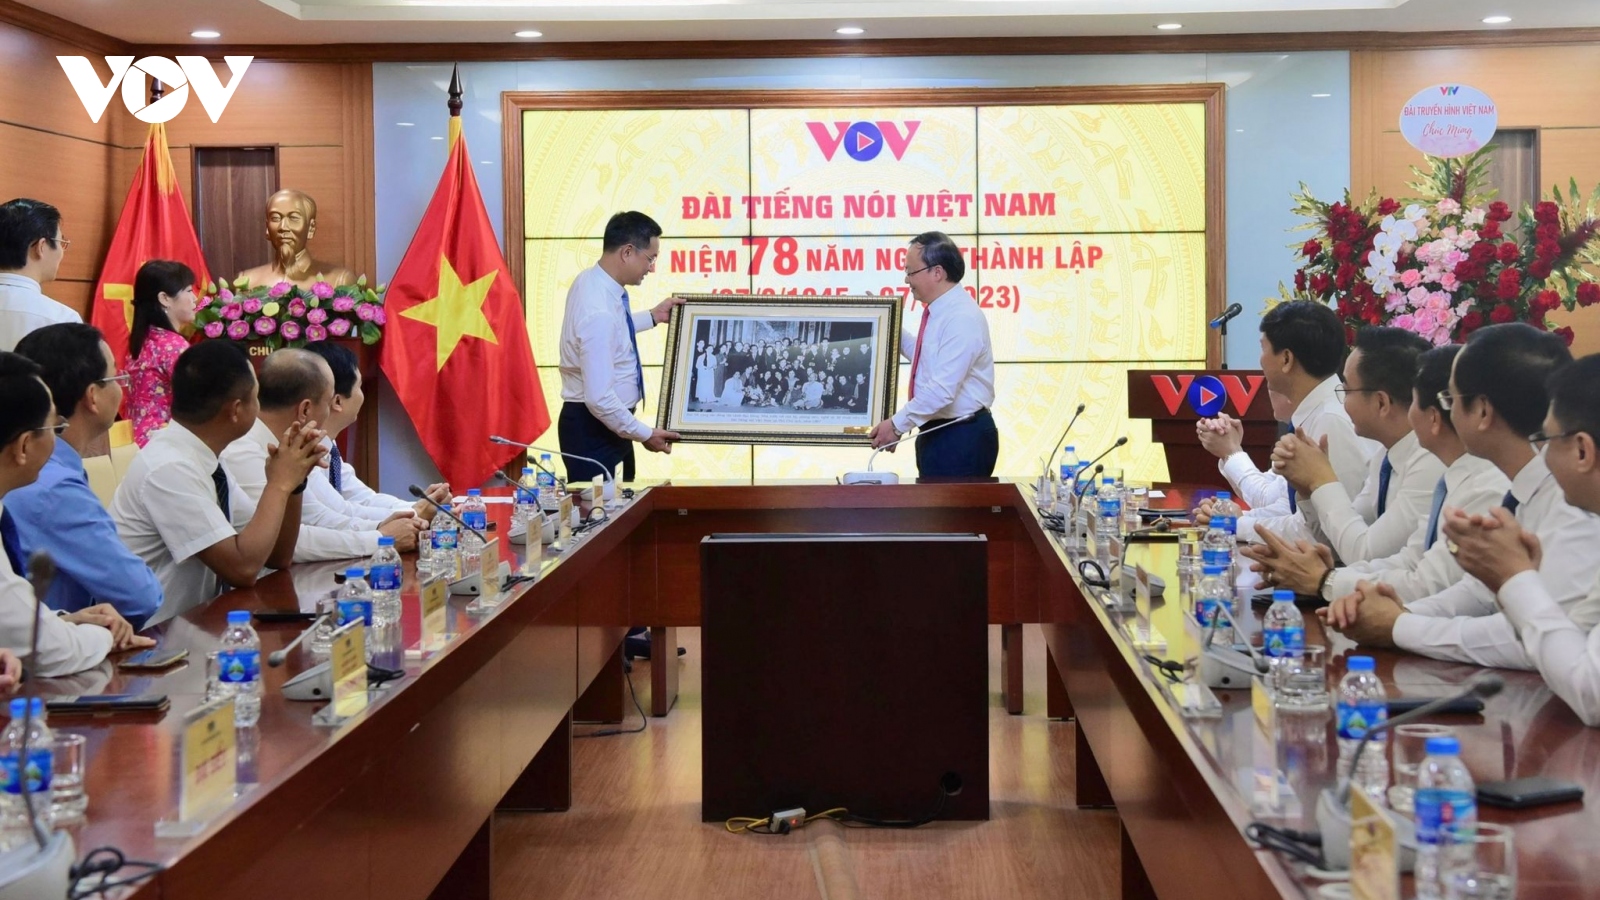 VOV và VTV tăng cường hợp tác, tuyên truyền giữa hai cơ quan báo chí chủ lực